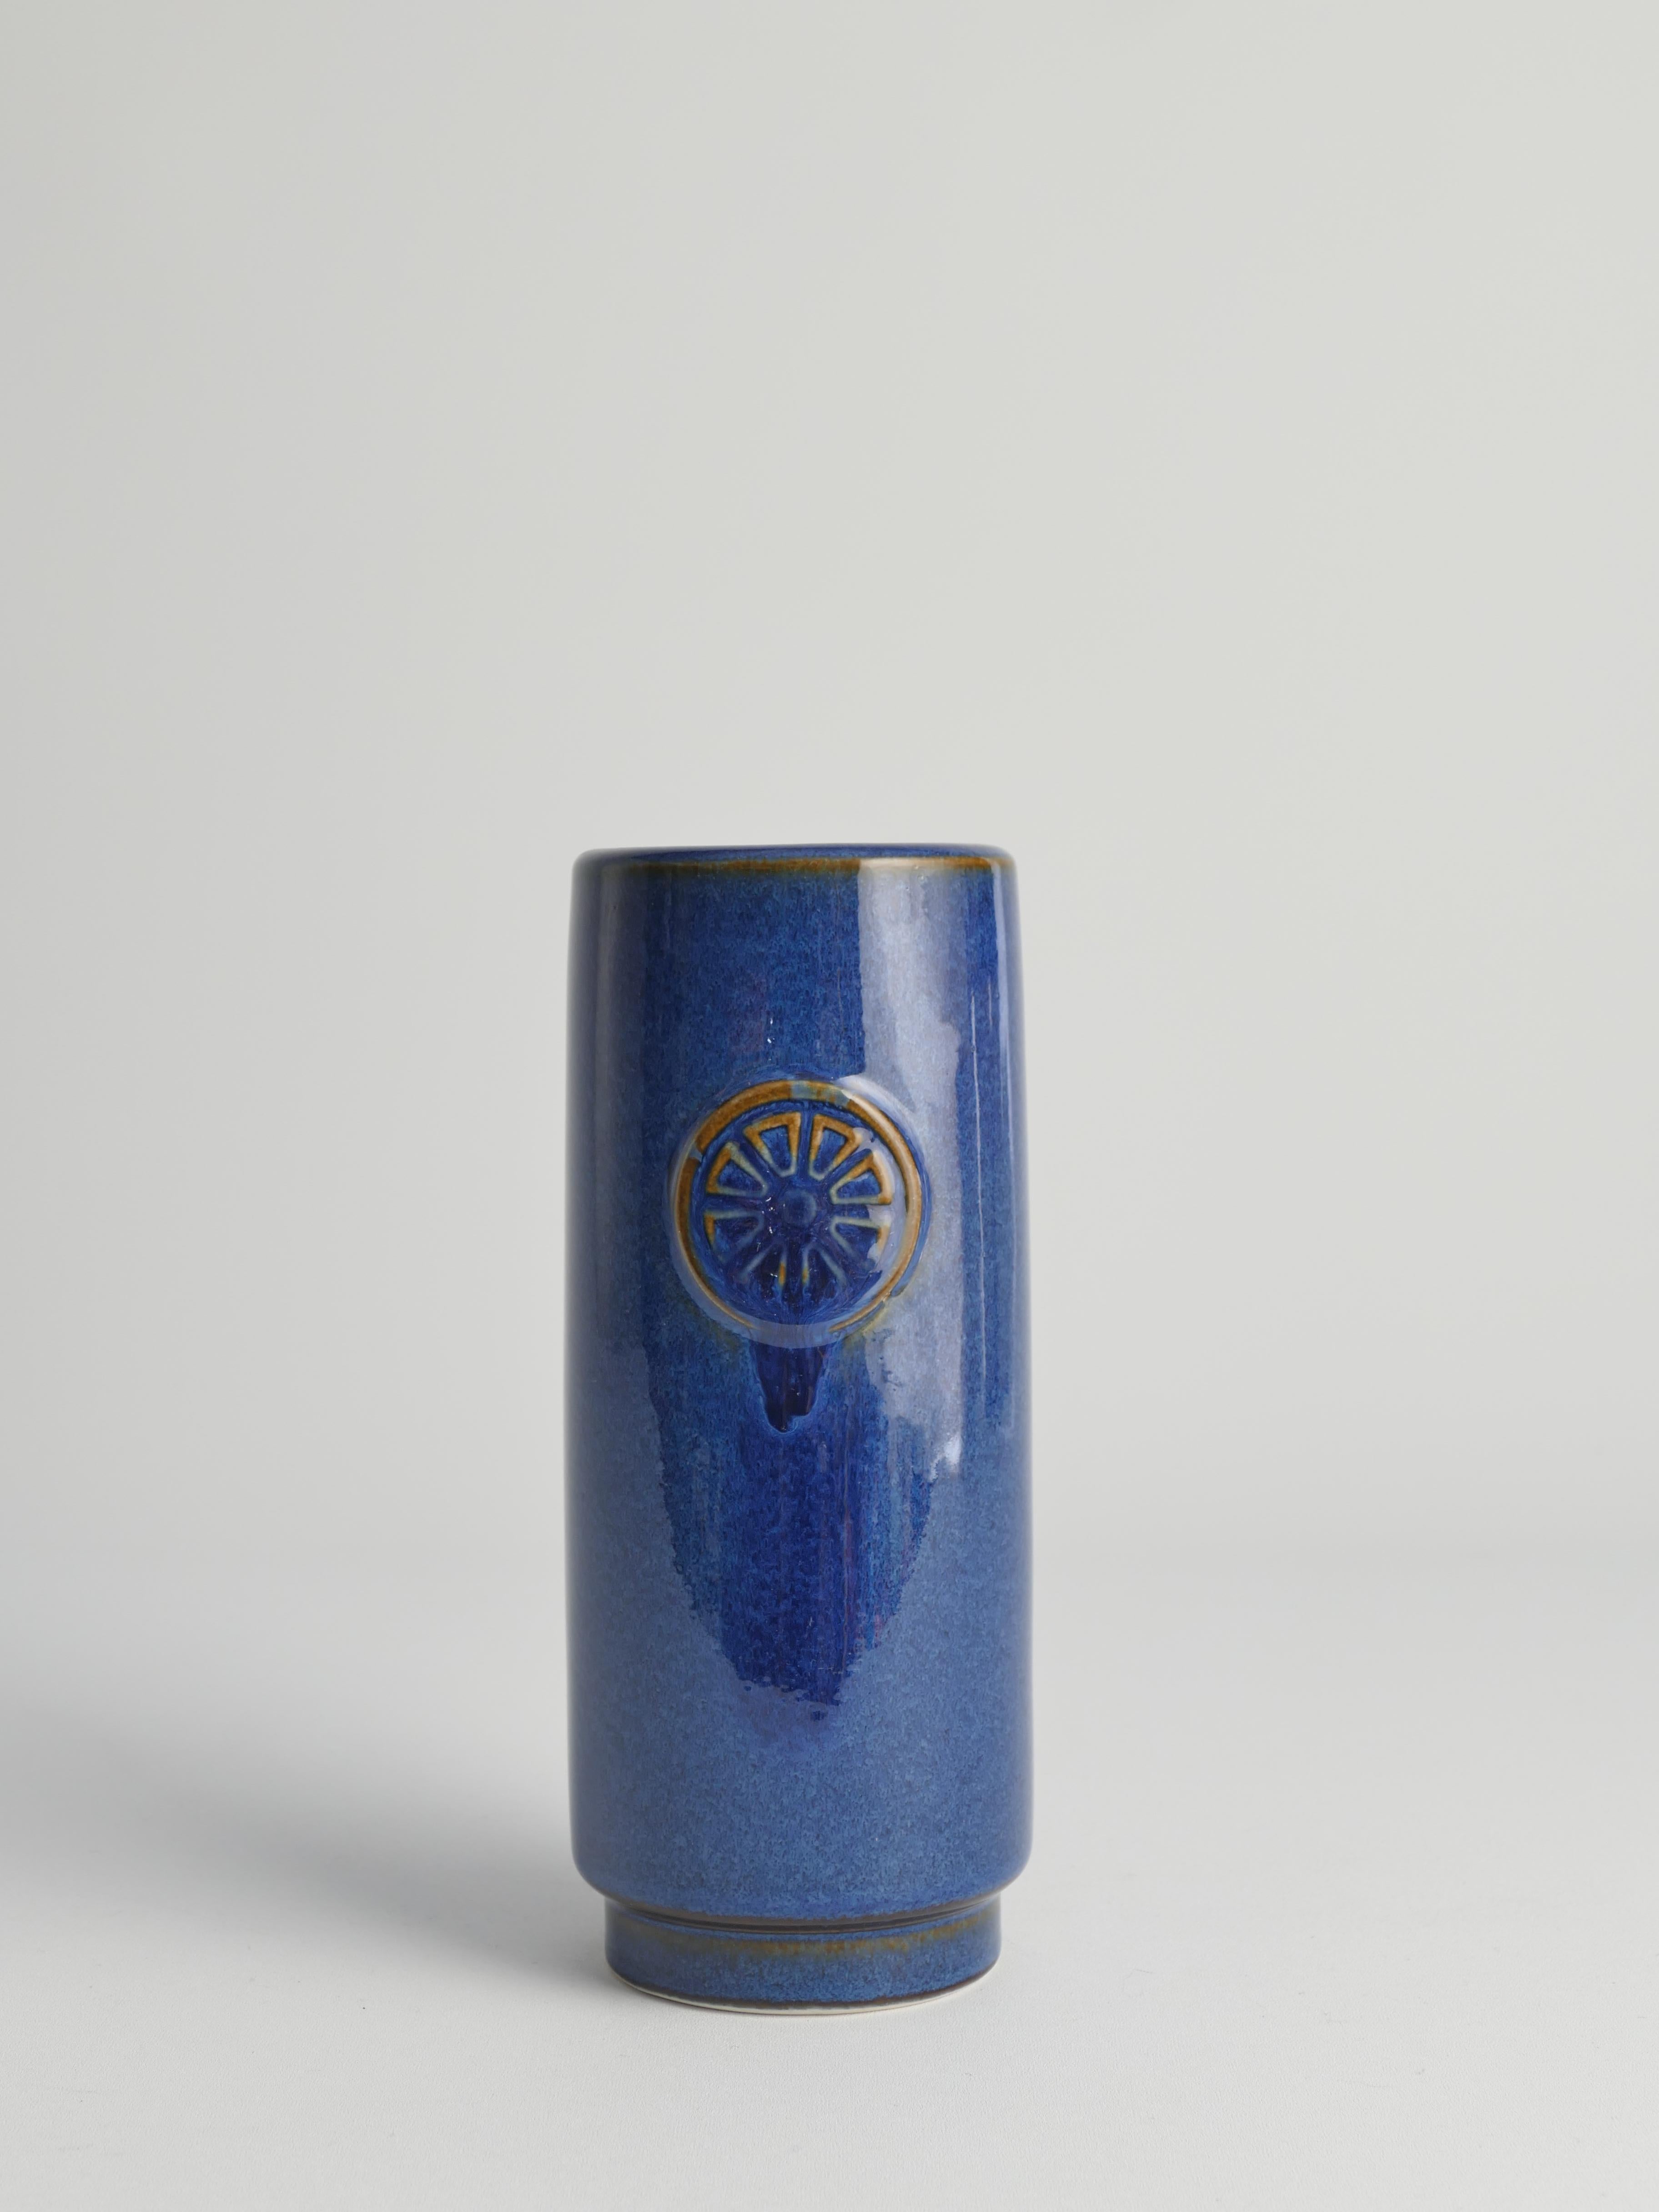 Il s'agit d'un vase avec une belle glaçure bleue de la série Nordlys (Northern Light en danois) conçue par Maria Philippi pour Søholm Ceramics. Le nom 